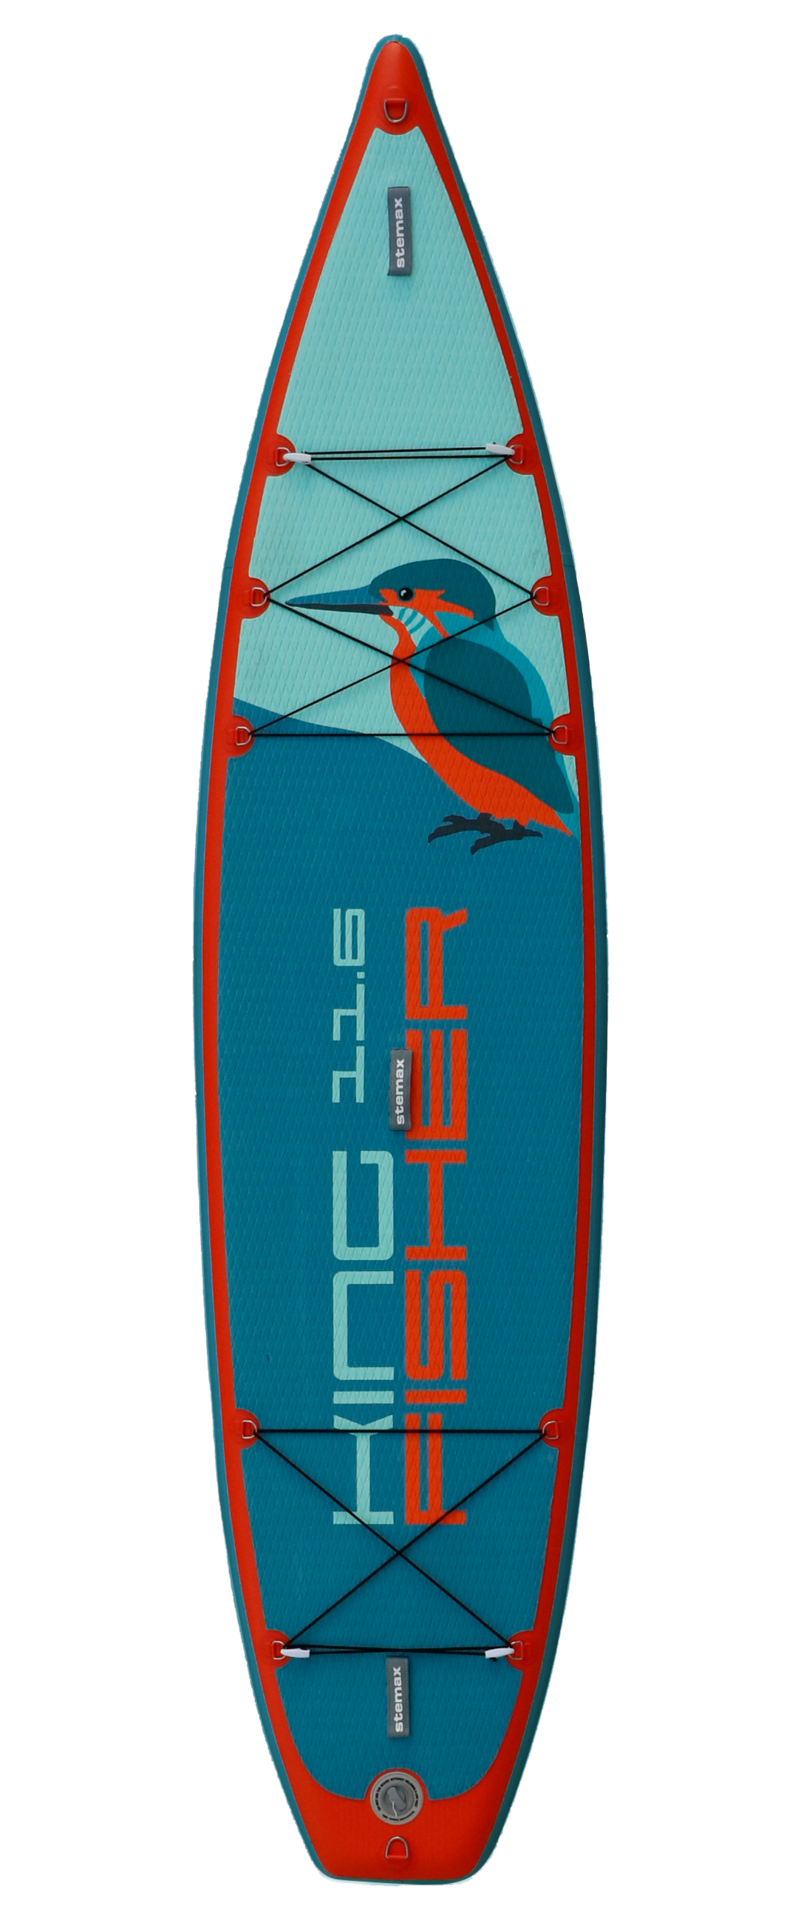 Kingfisher 11'6